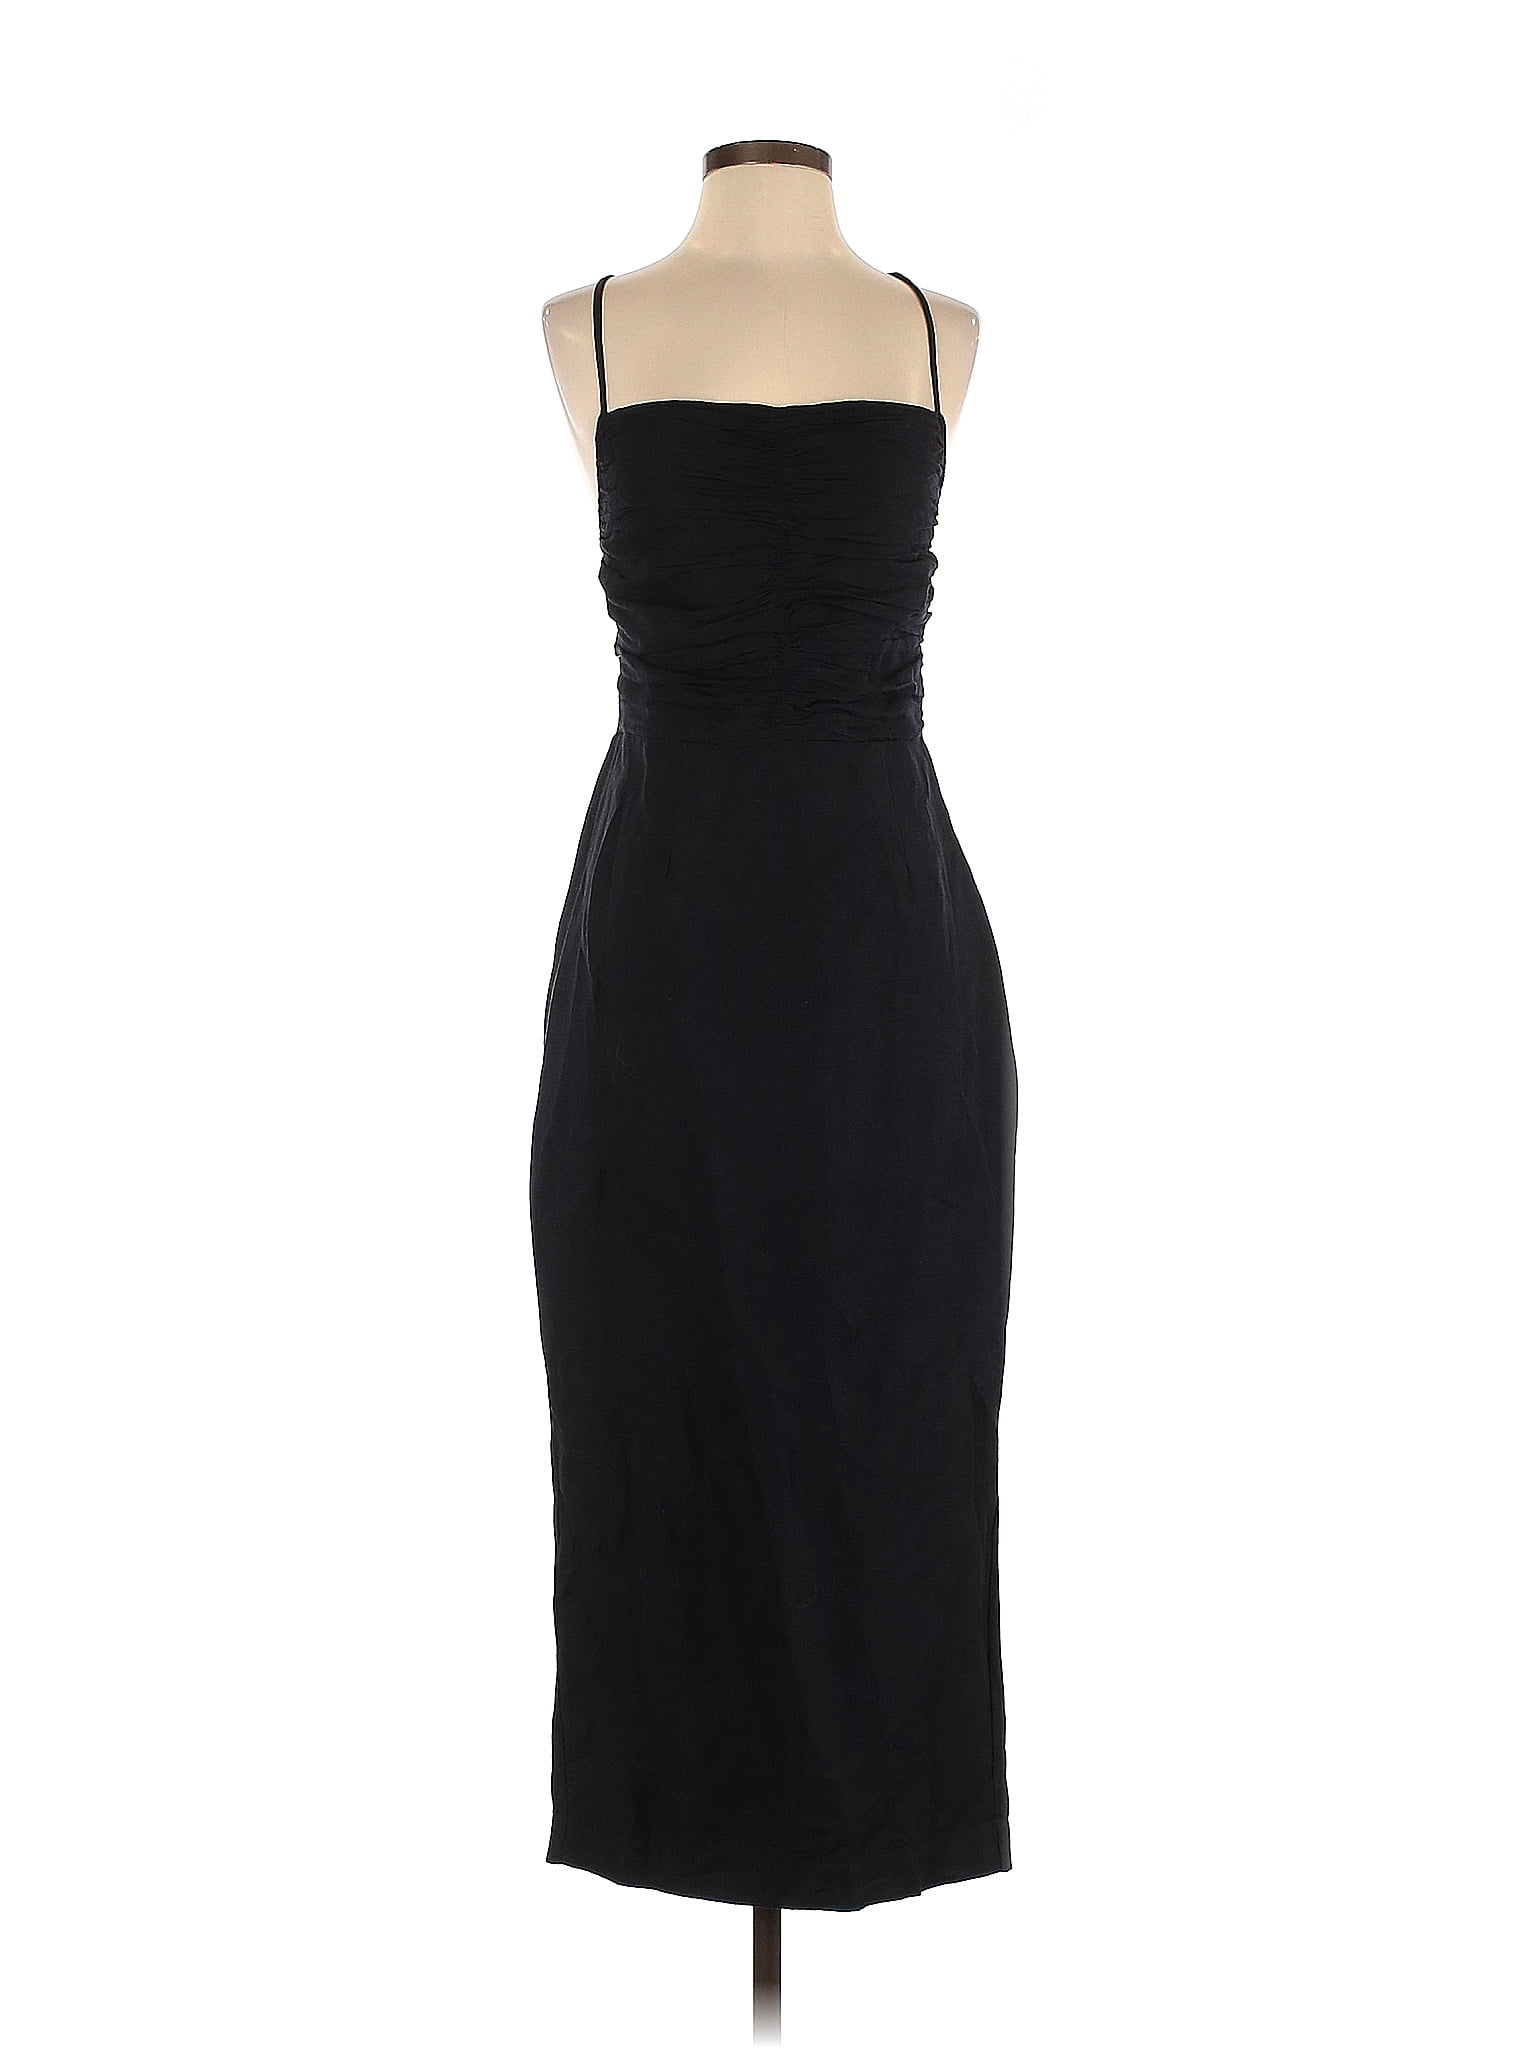 Posse Solid Black Cocktail Dress Size S - 78% off | thredUP